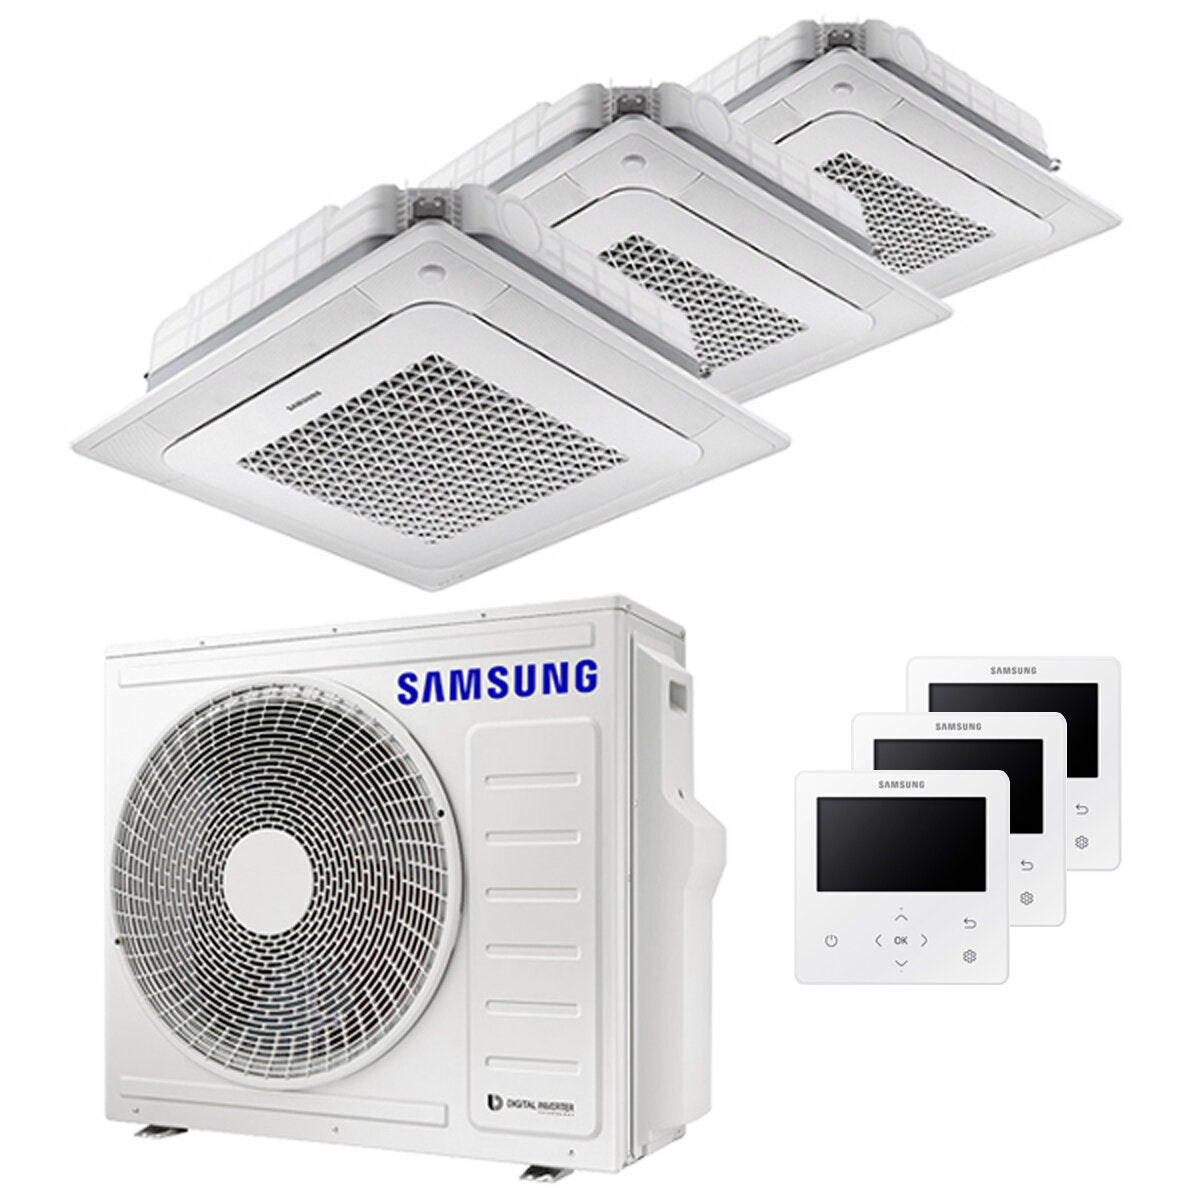 Samsung Klimaanlage Windfree 4-Wege Trial Split 9000 + 12000 + 12000 BTU Inverter A++ Außengerät 6,8 kW